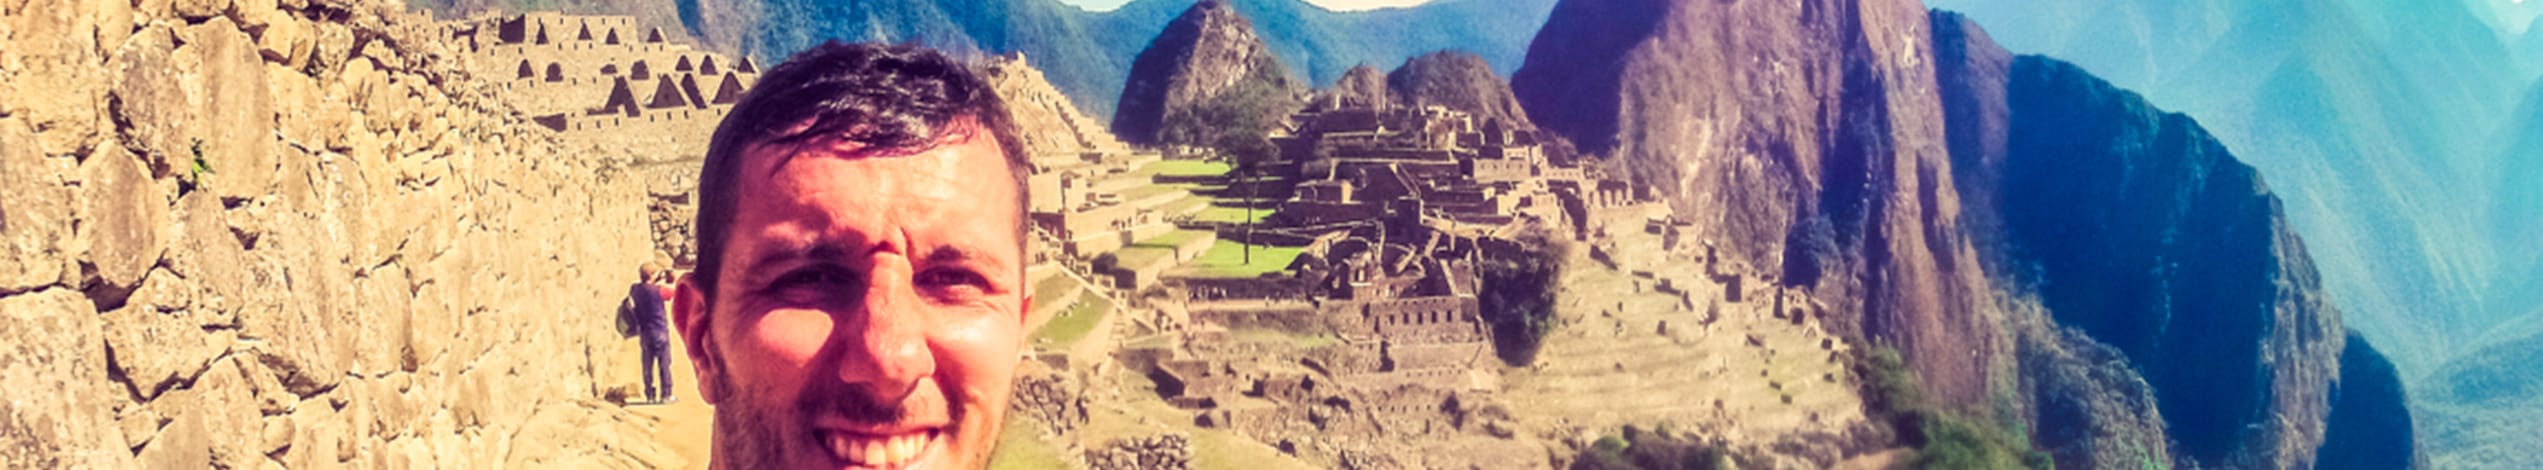 Legendariska Inkaleden till Machu Picchu